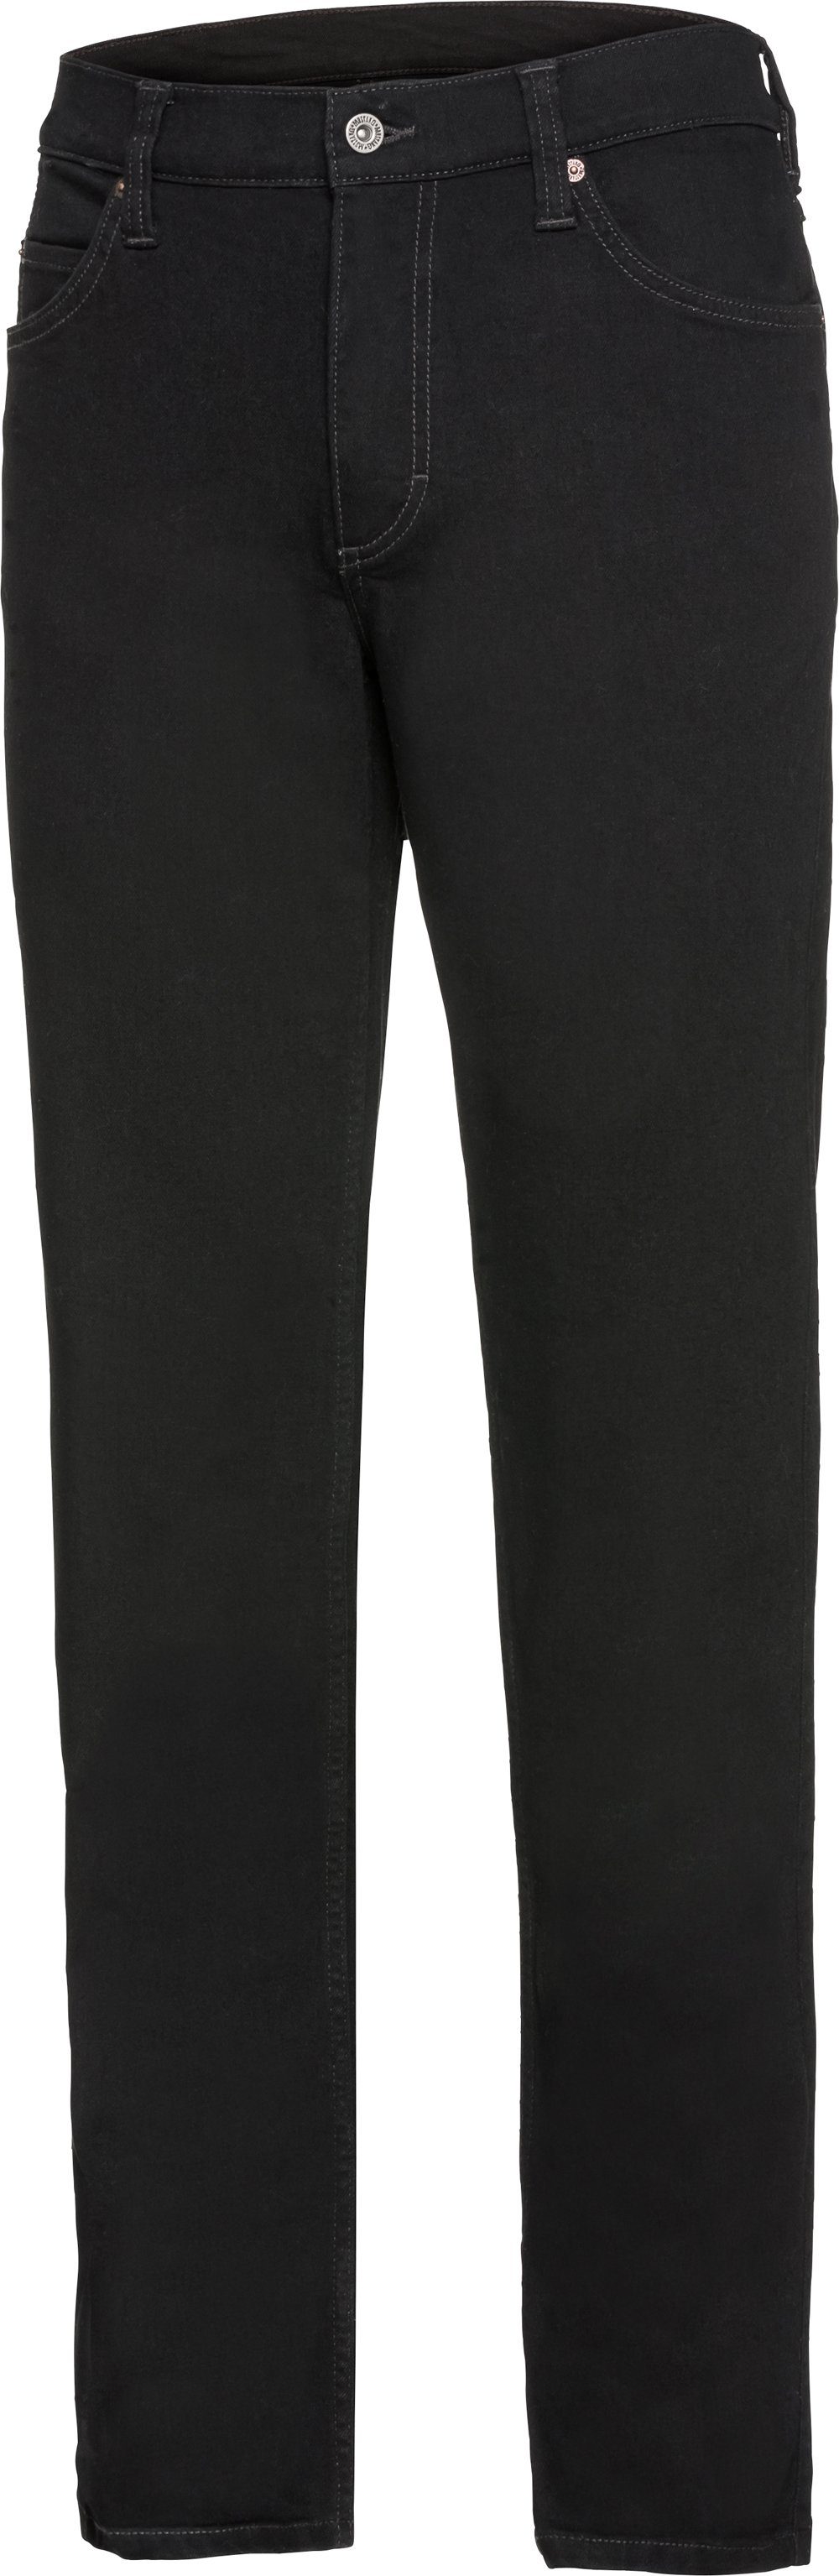 MUSTANG Stretch-Jeans schwarz Stretch und Bund 5-Pocket-Style, mit im geradem Beinverlauf